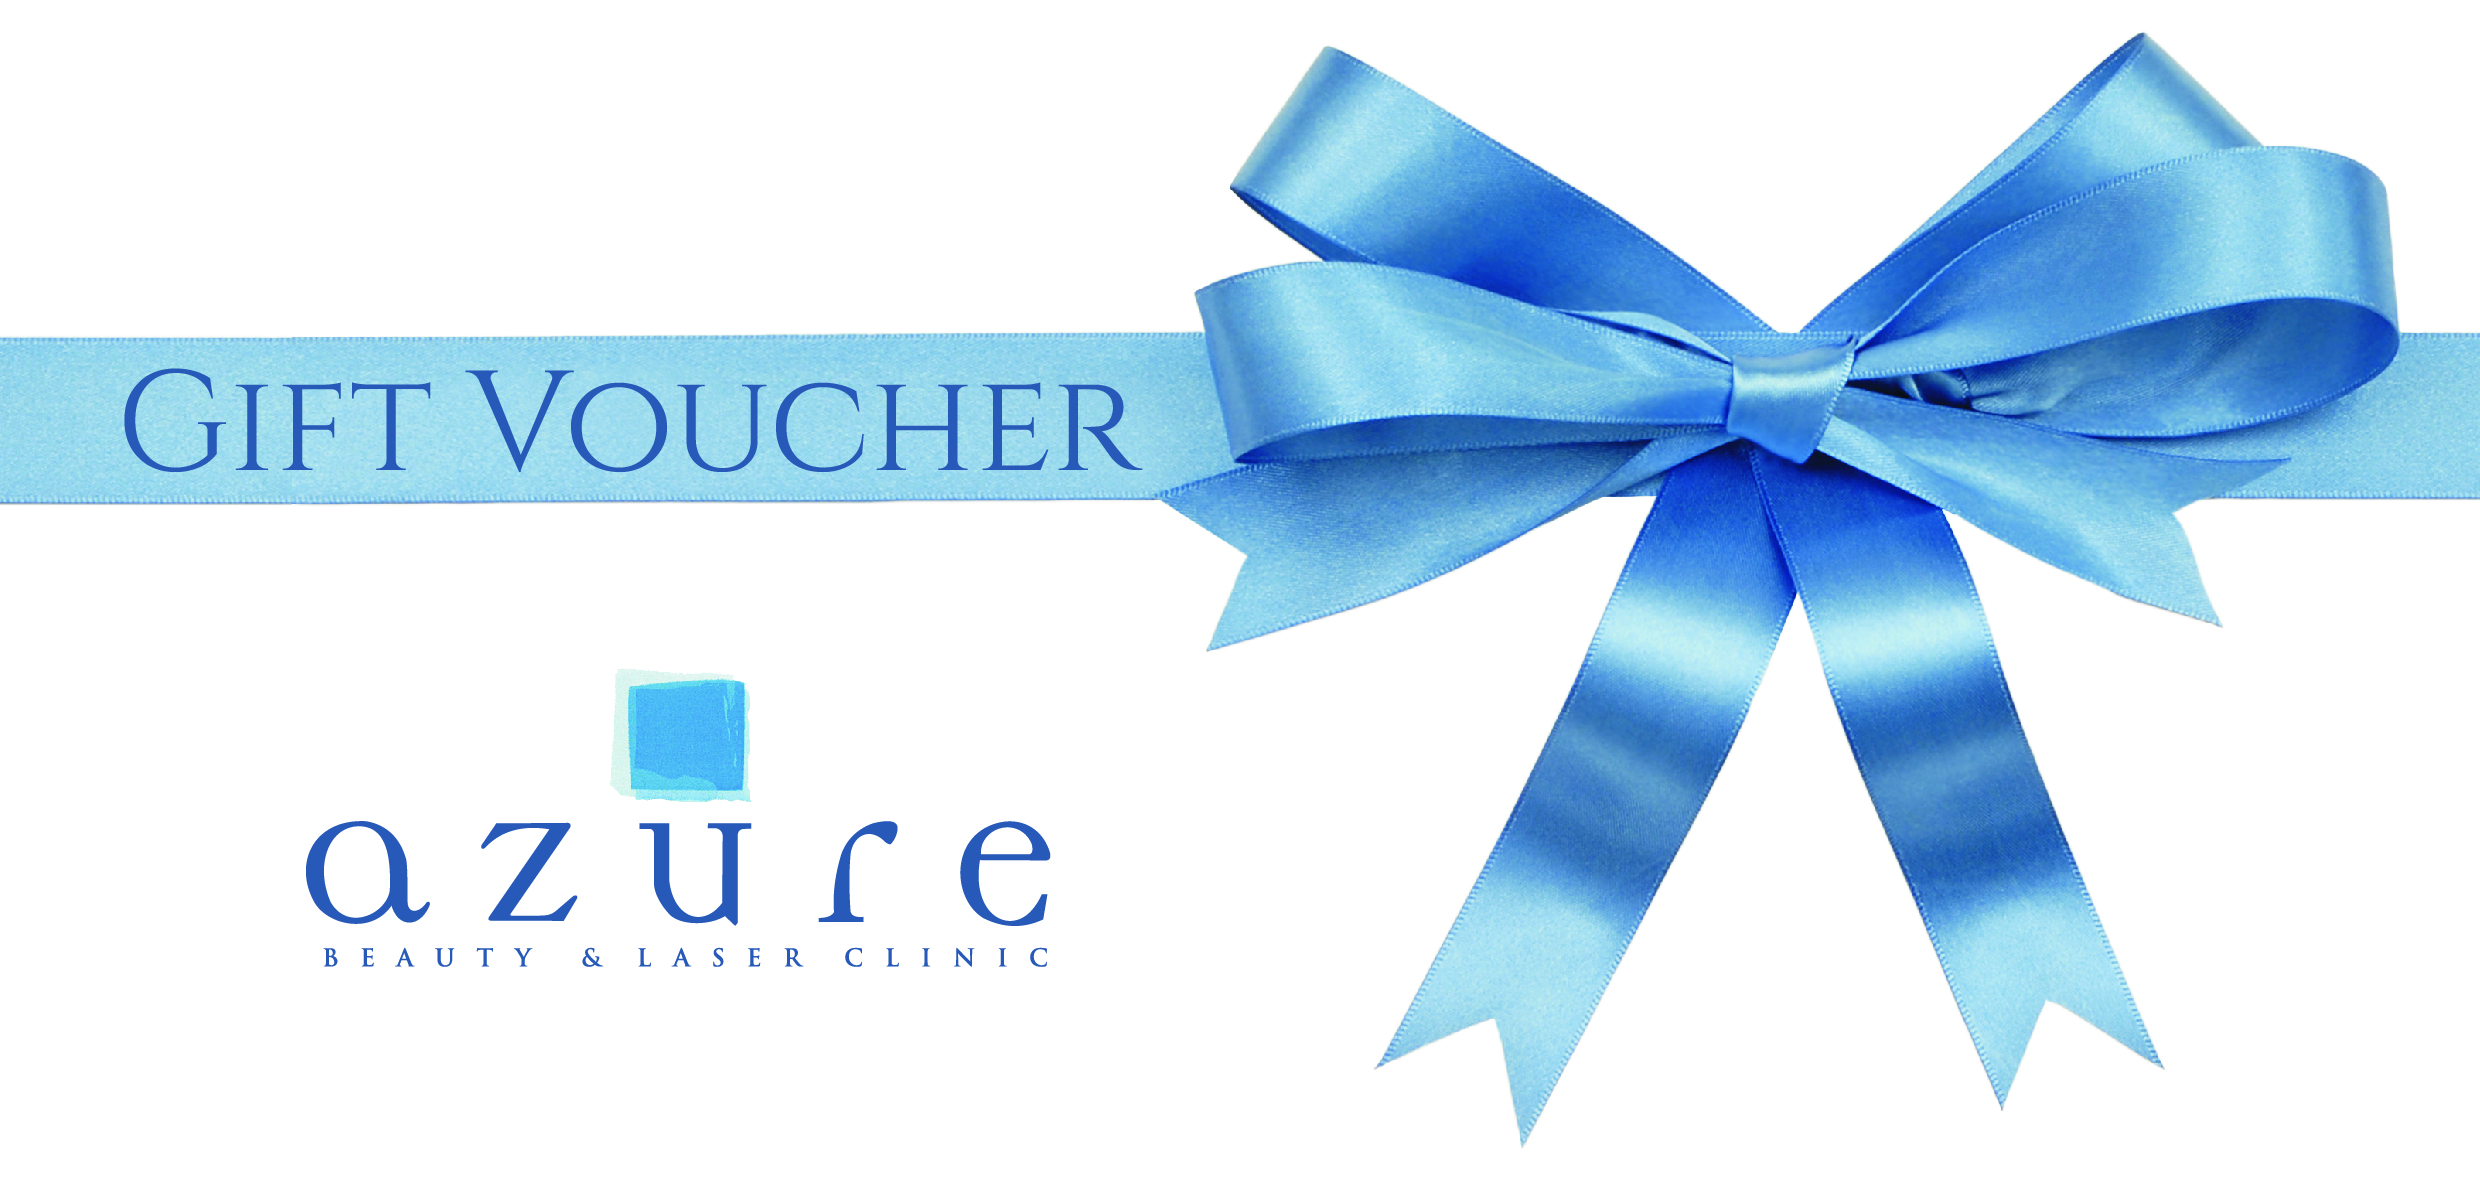 Azure Beauty Salon Gift Voucher